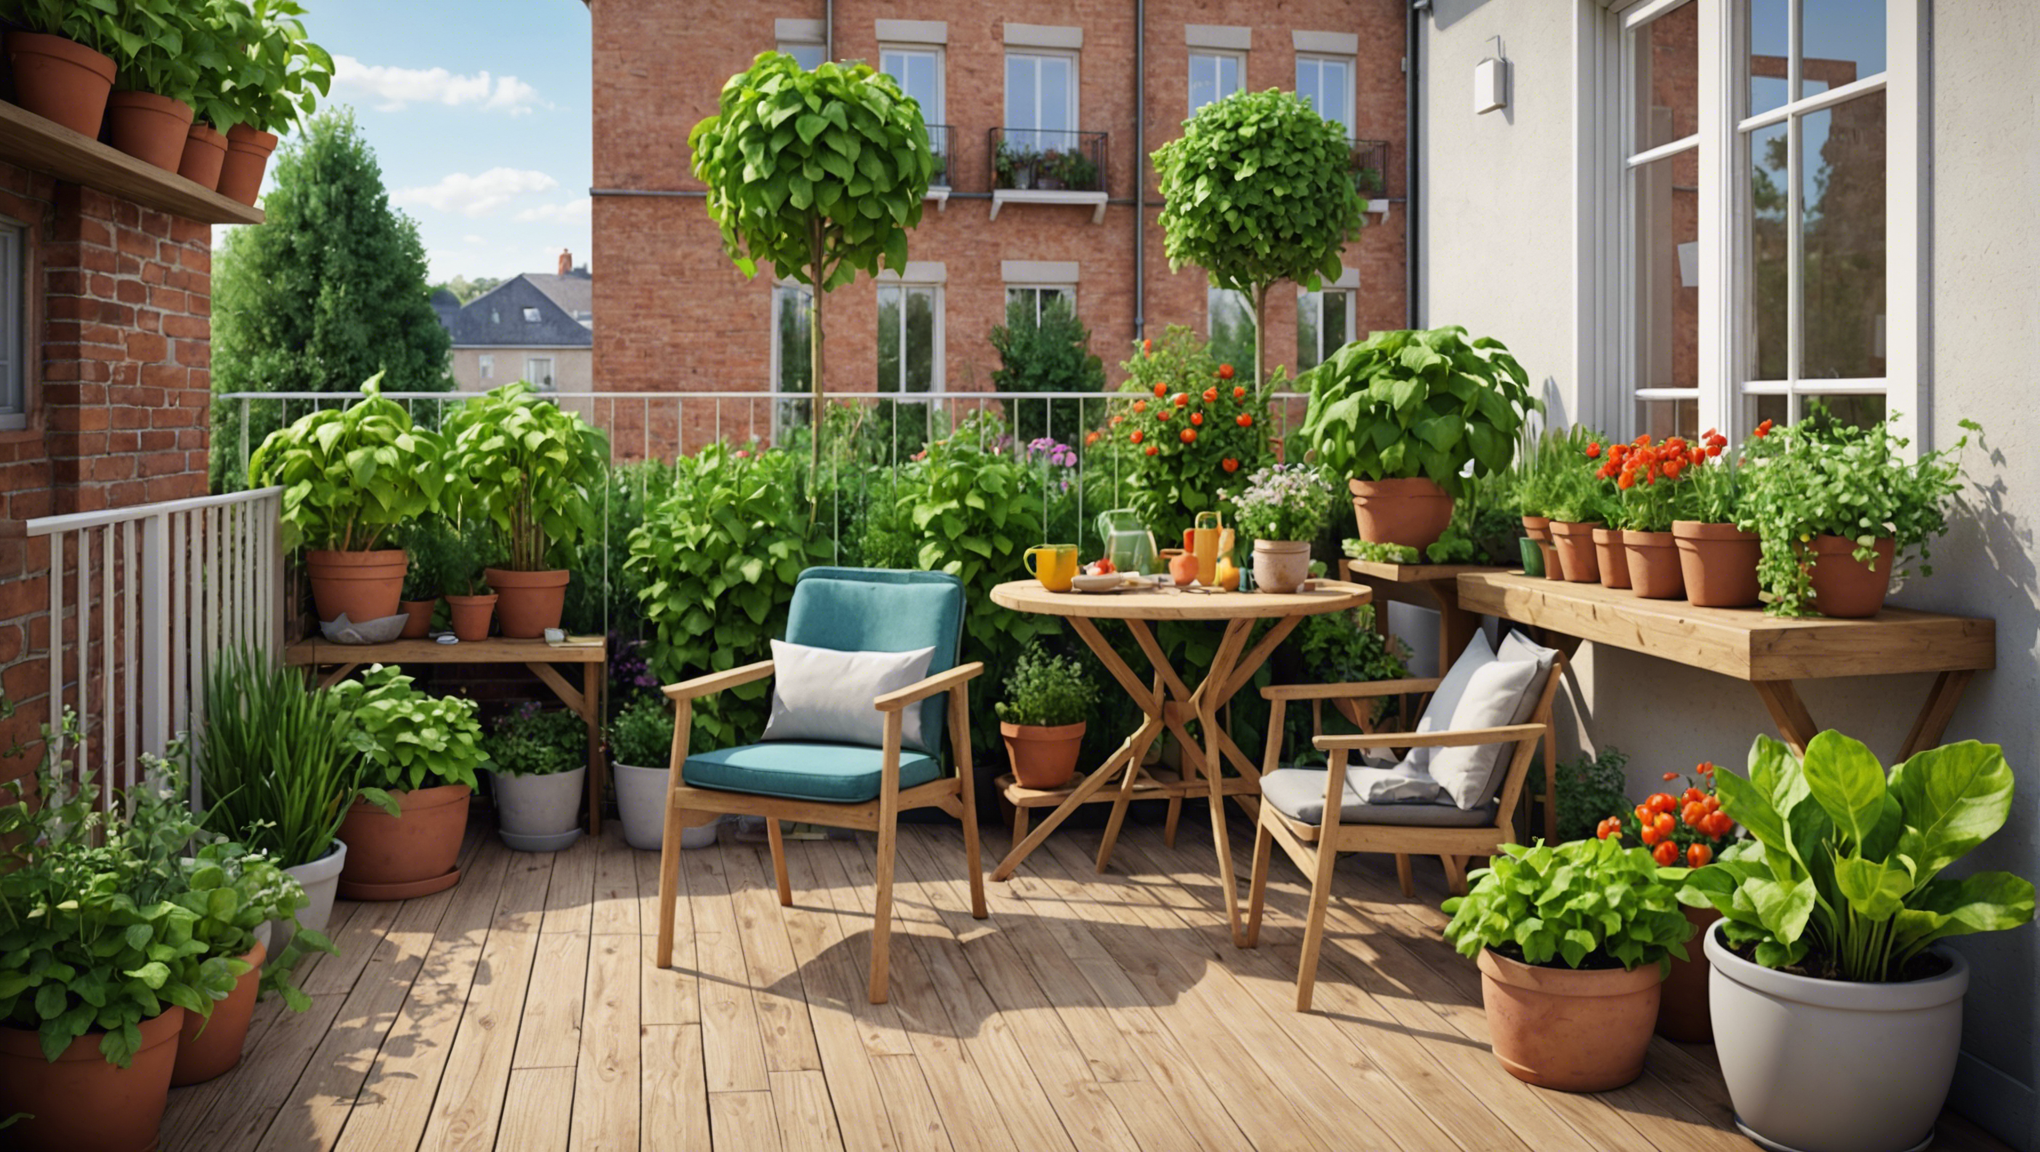 découvrez comment transformer votre balcon en un véritable jardin de saveurs grâce à la culture en potager. profitez des délices de votre propre récolte, même en ville.